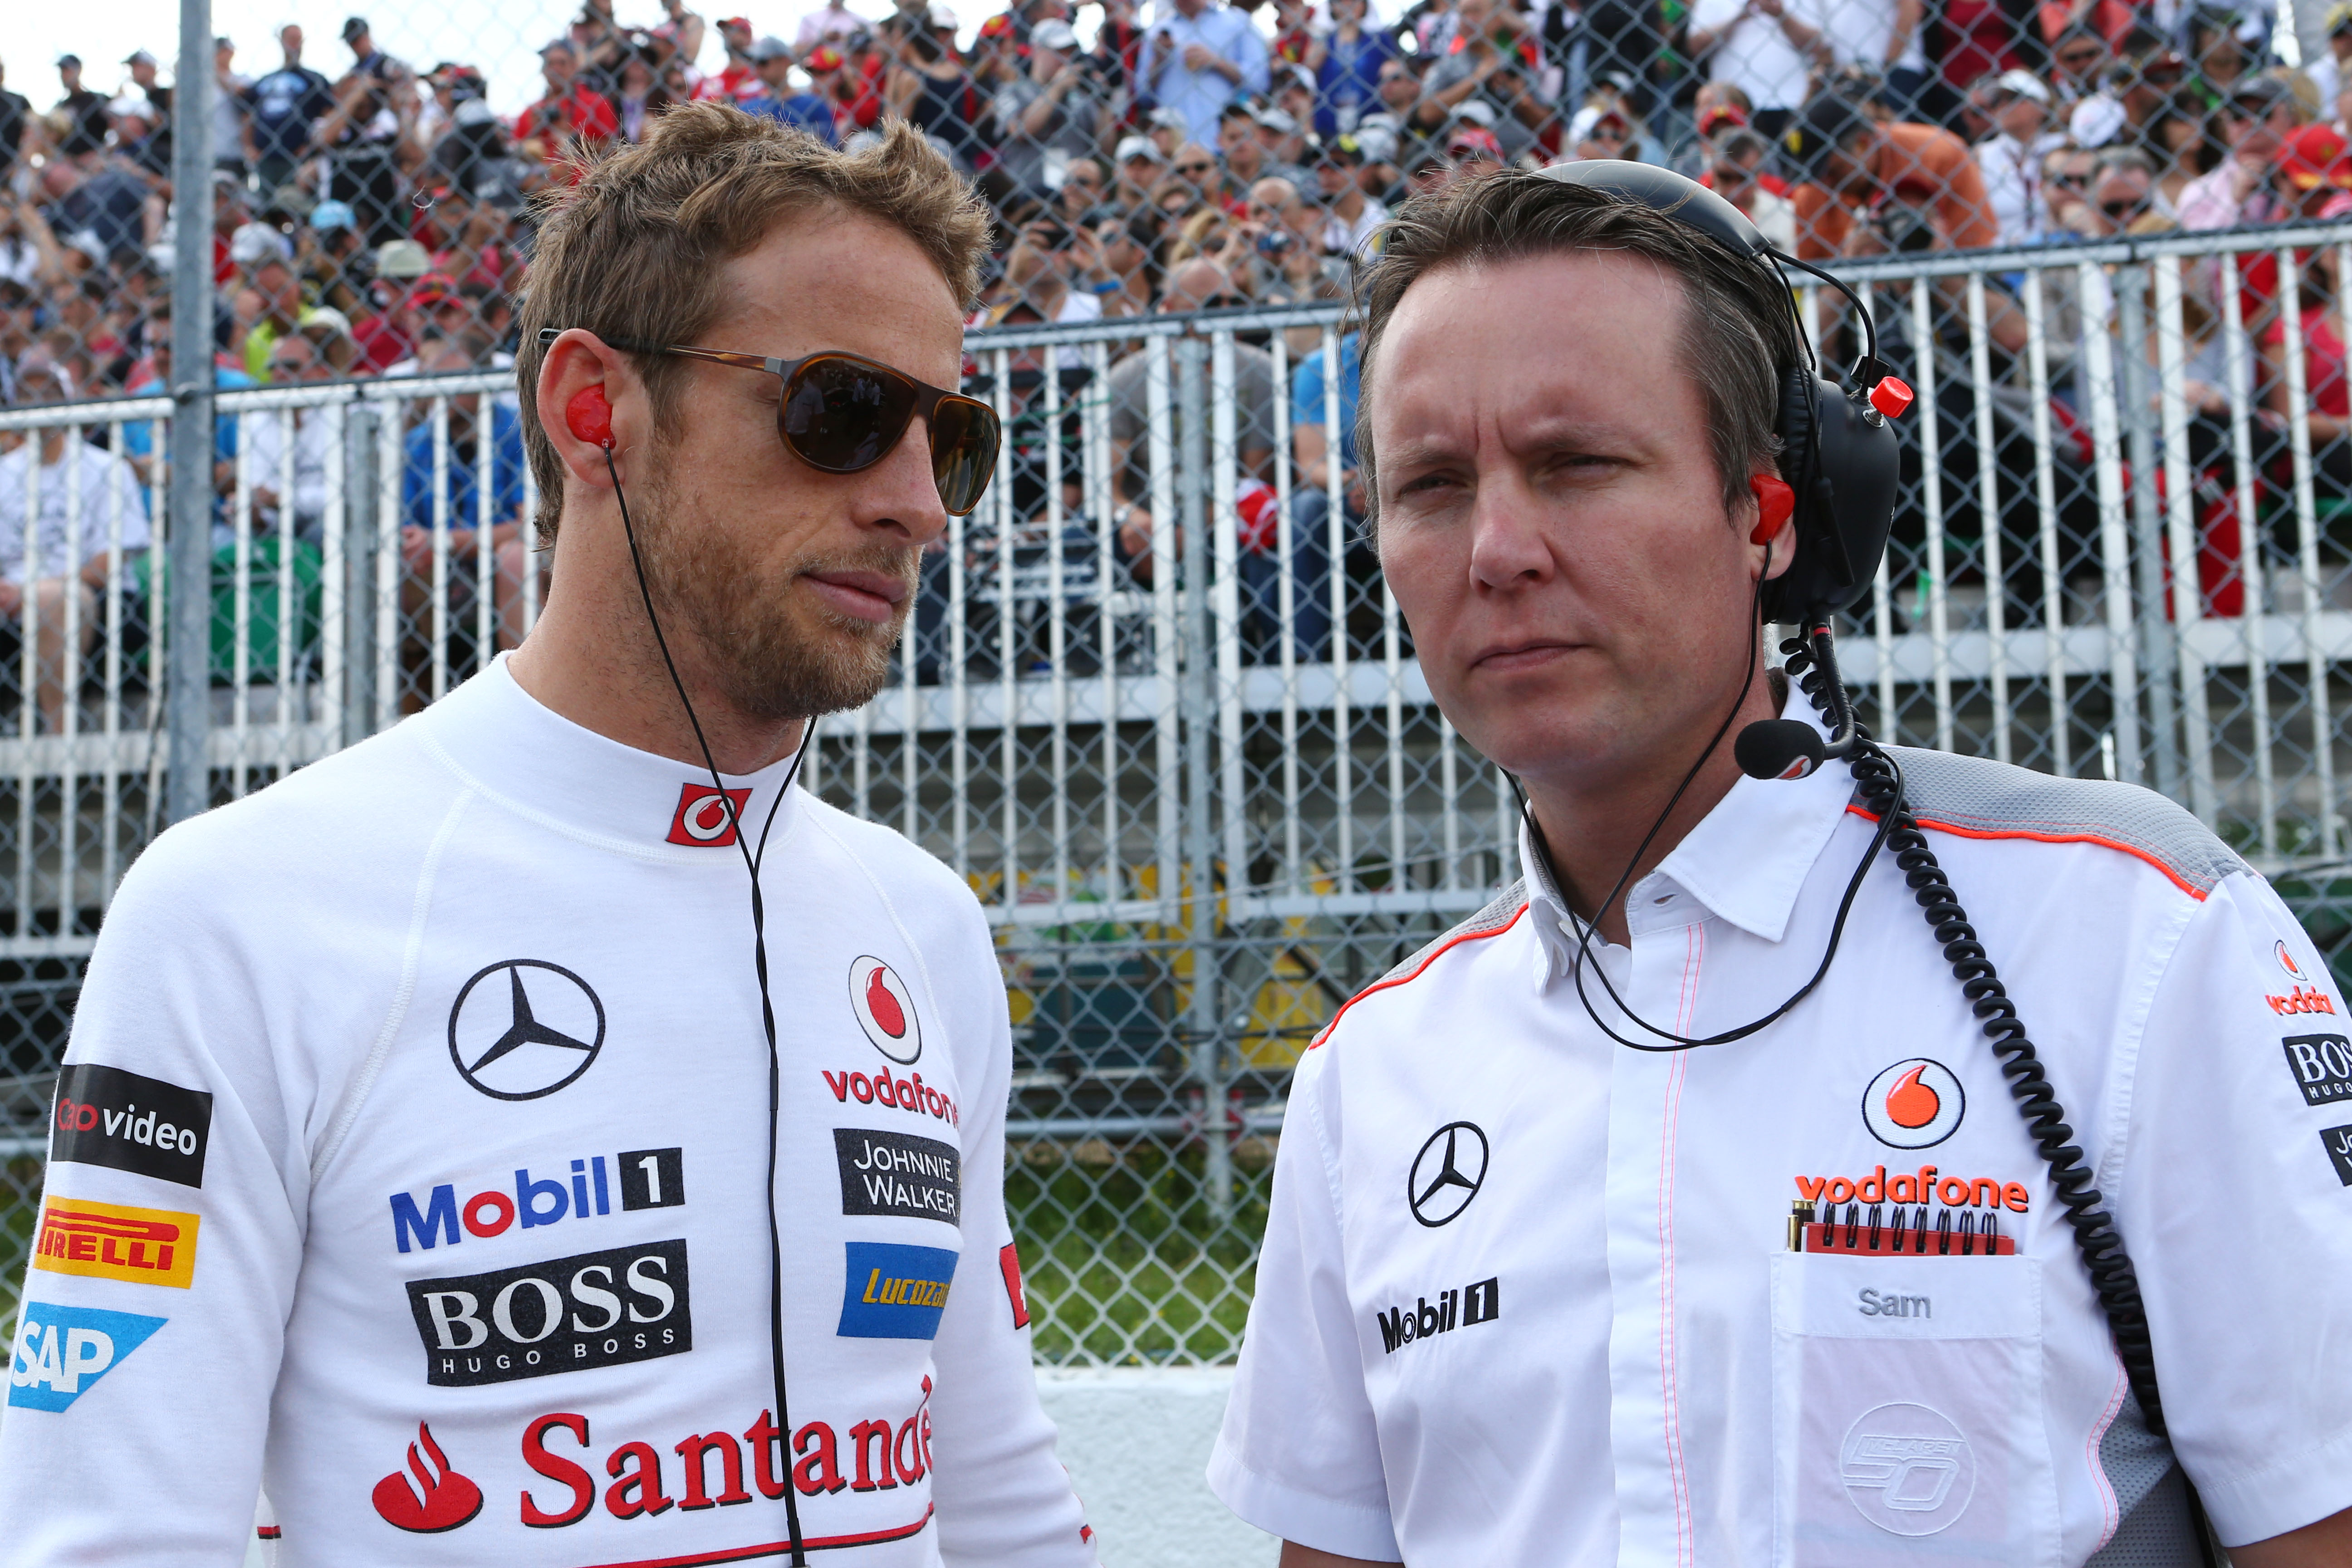 Michael verwacht dat McLaren in Spa verbetert